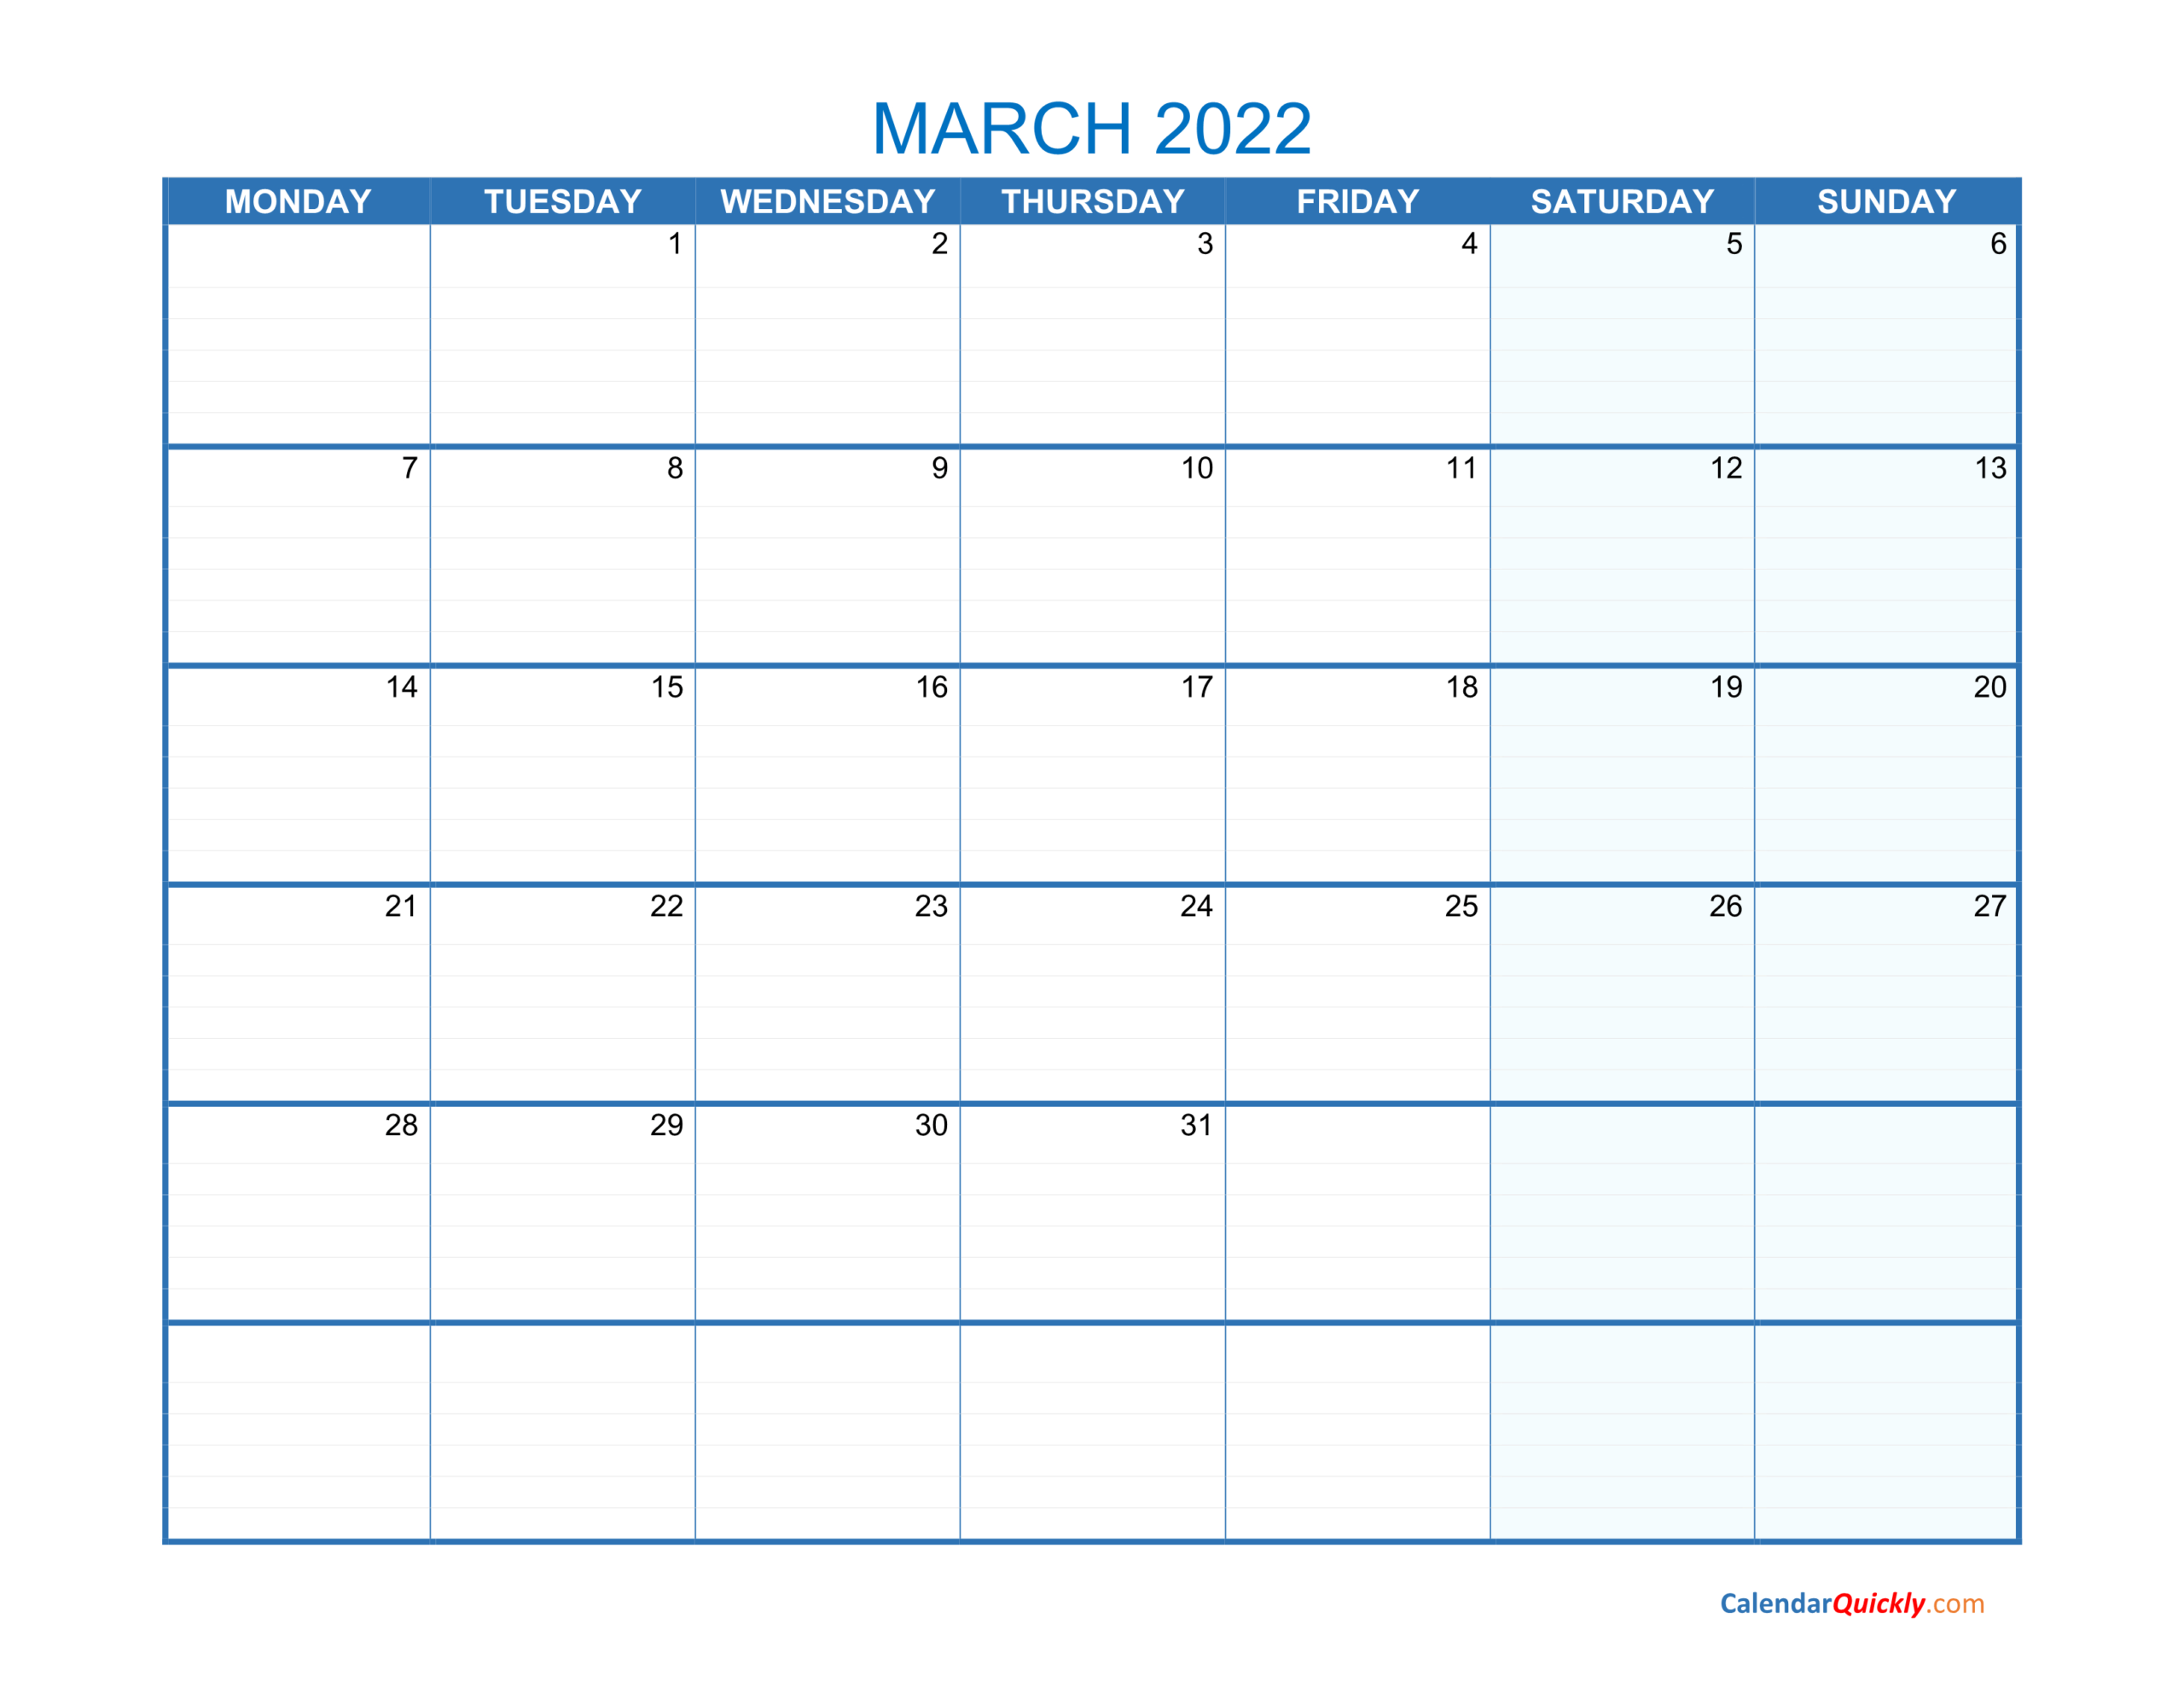 March Monday 2022 Blank Calendar | Calendar Quickly  Free Printable Calendar 2022 Starting Monday